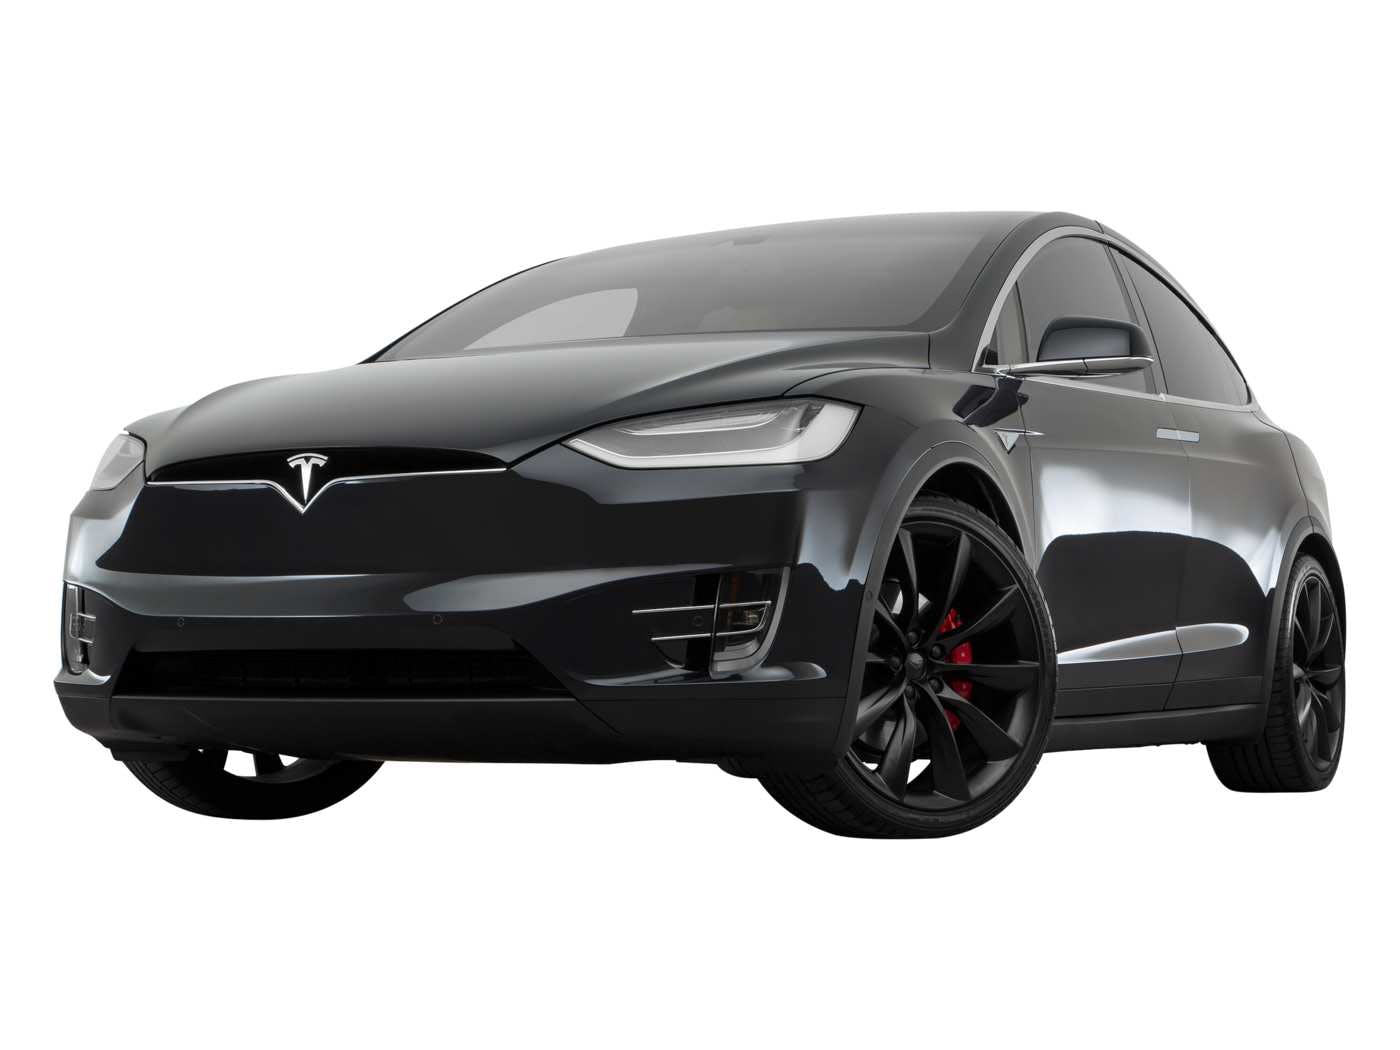 2018 Tesla Model X Review | Pricing, Trims & Photos - TrueCar